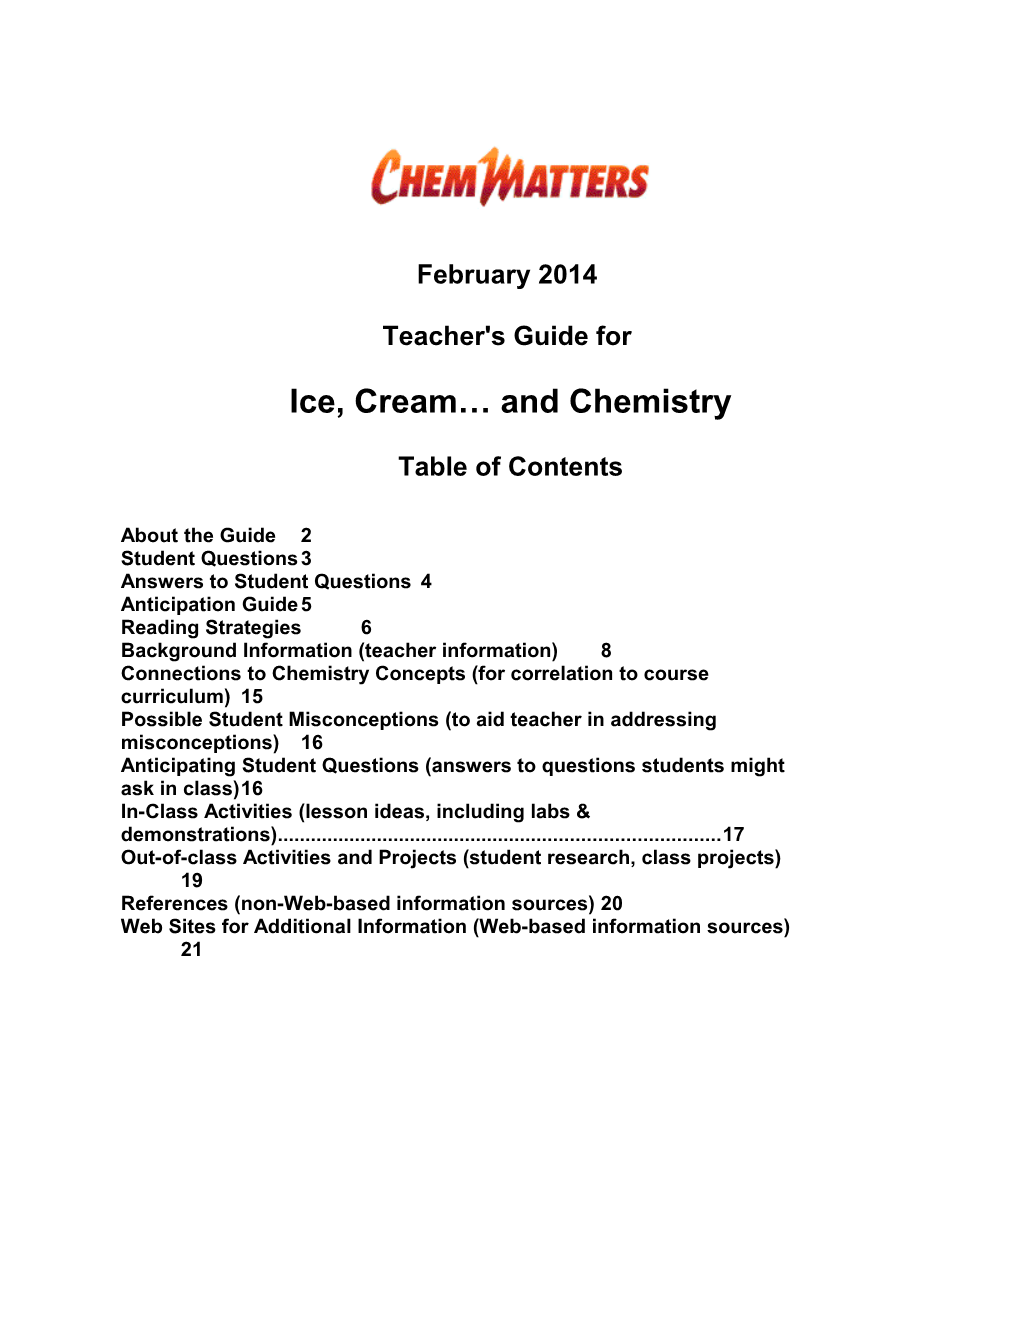 Ice, Cream and Chemistry